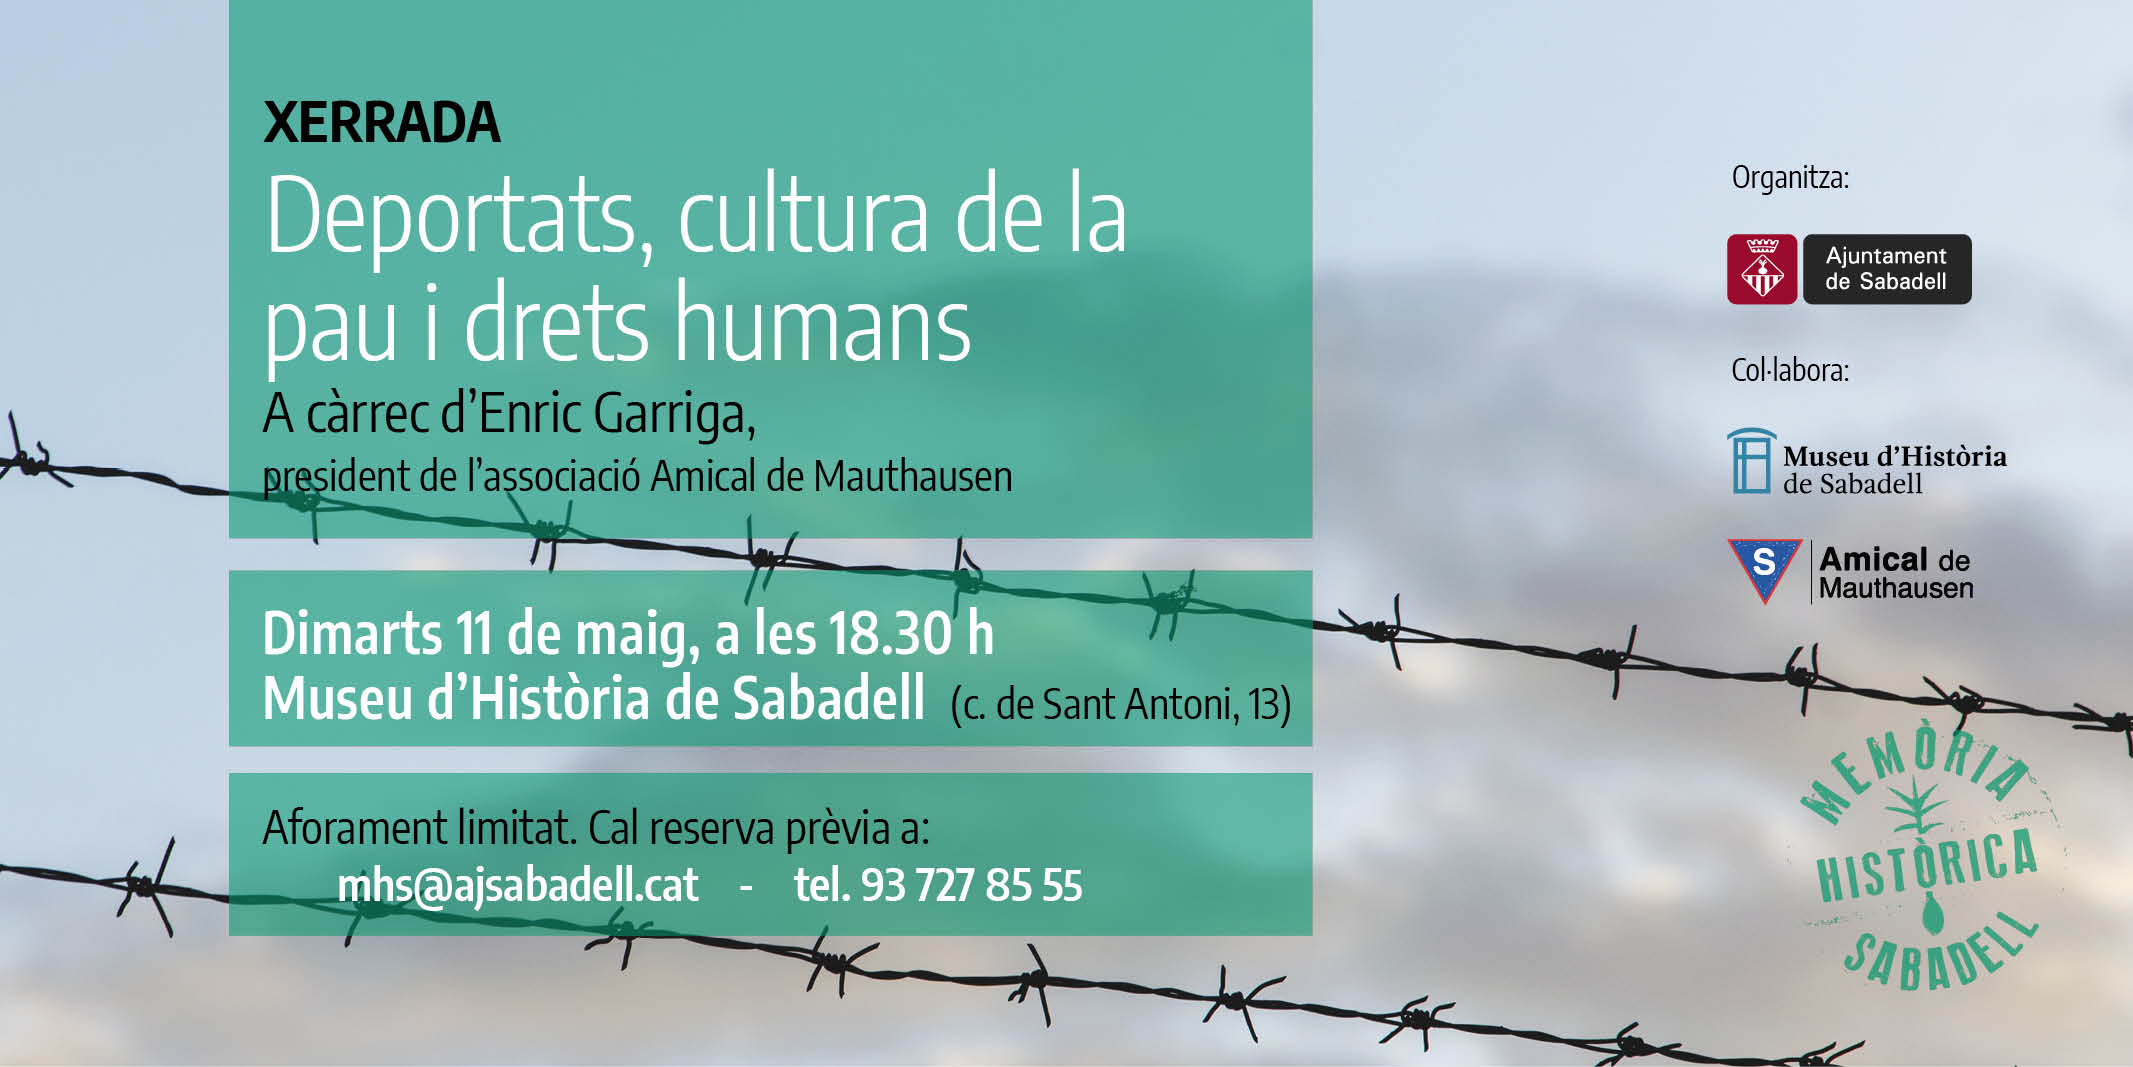 L’Ajuntament organitza la xerrada “Deportats, cultura de la pau i drets humans”, en el marc del dia d’homenatge a les víctimes espanyoles del nazisme